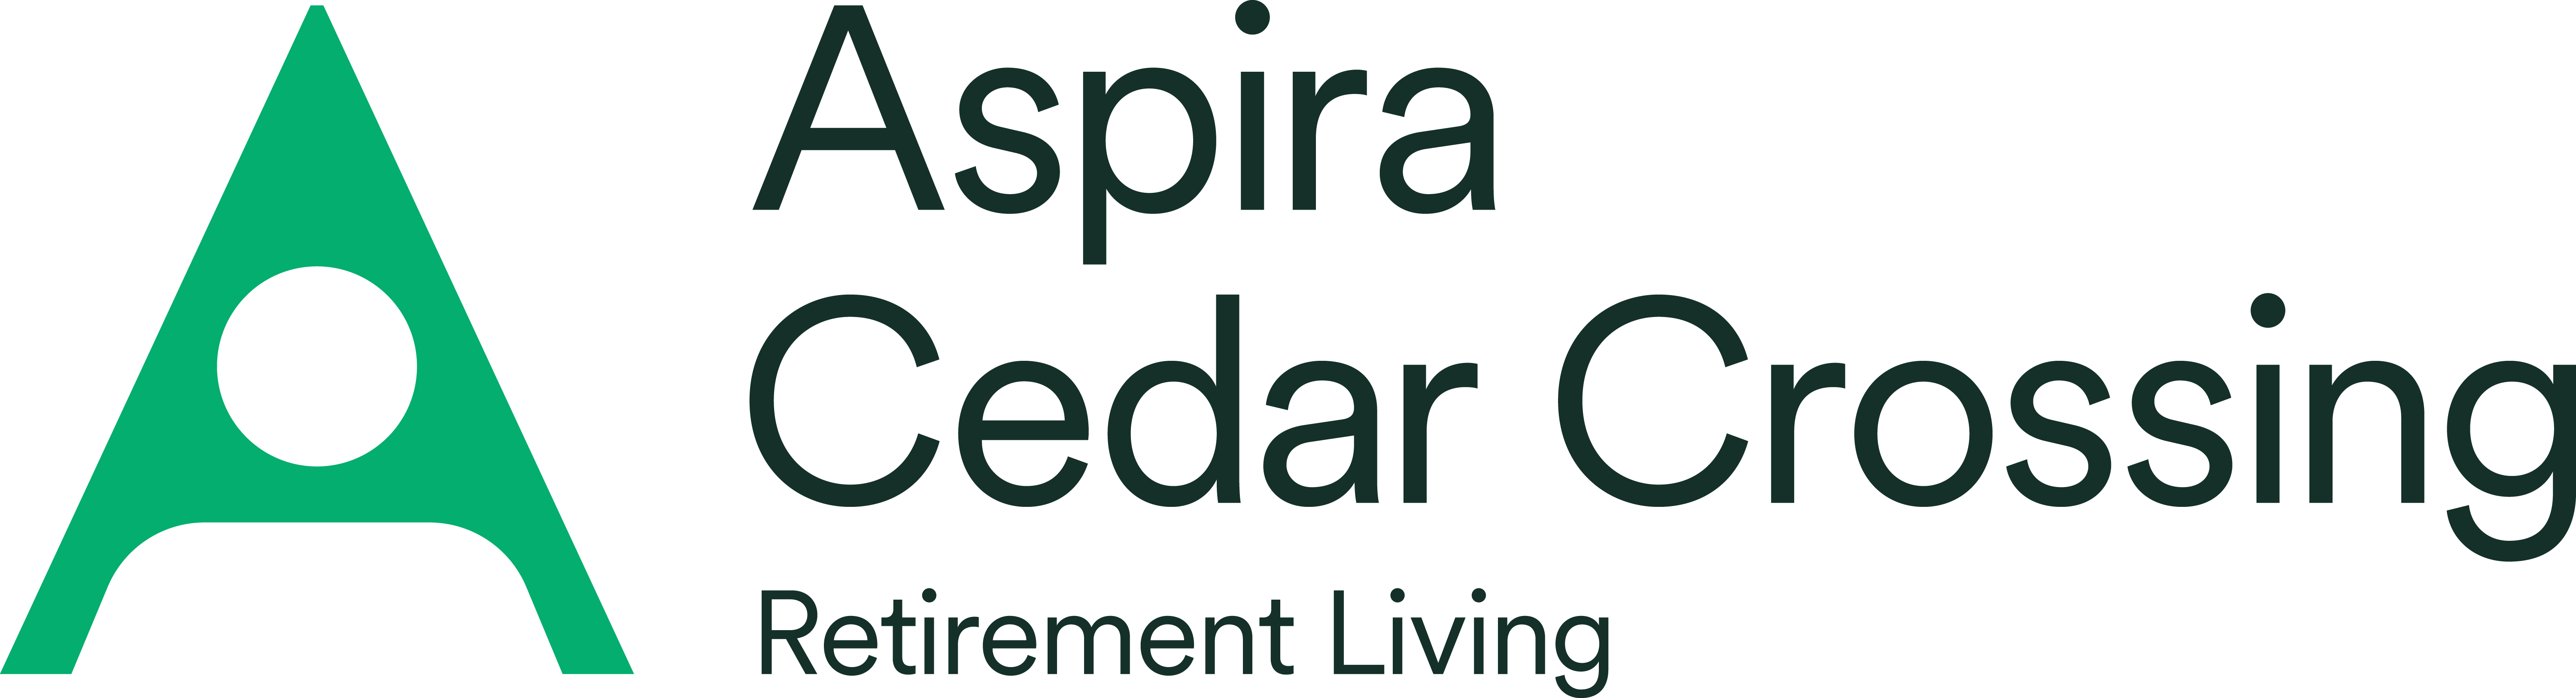 Aspira-logo-Cedar_Crossing